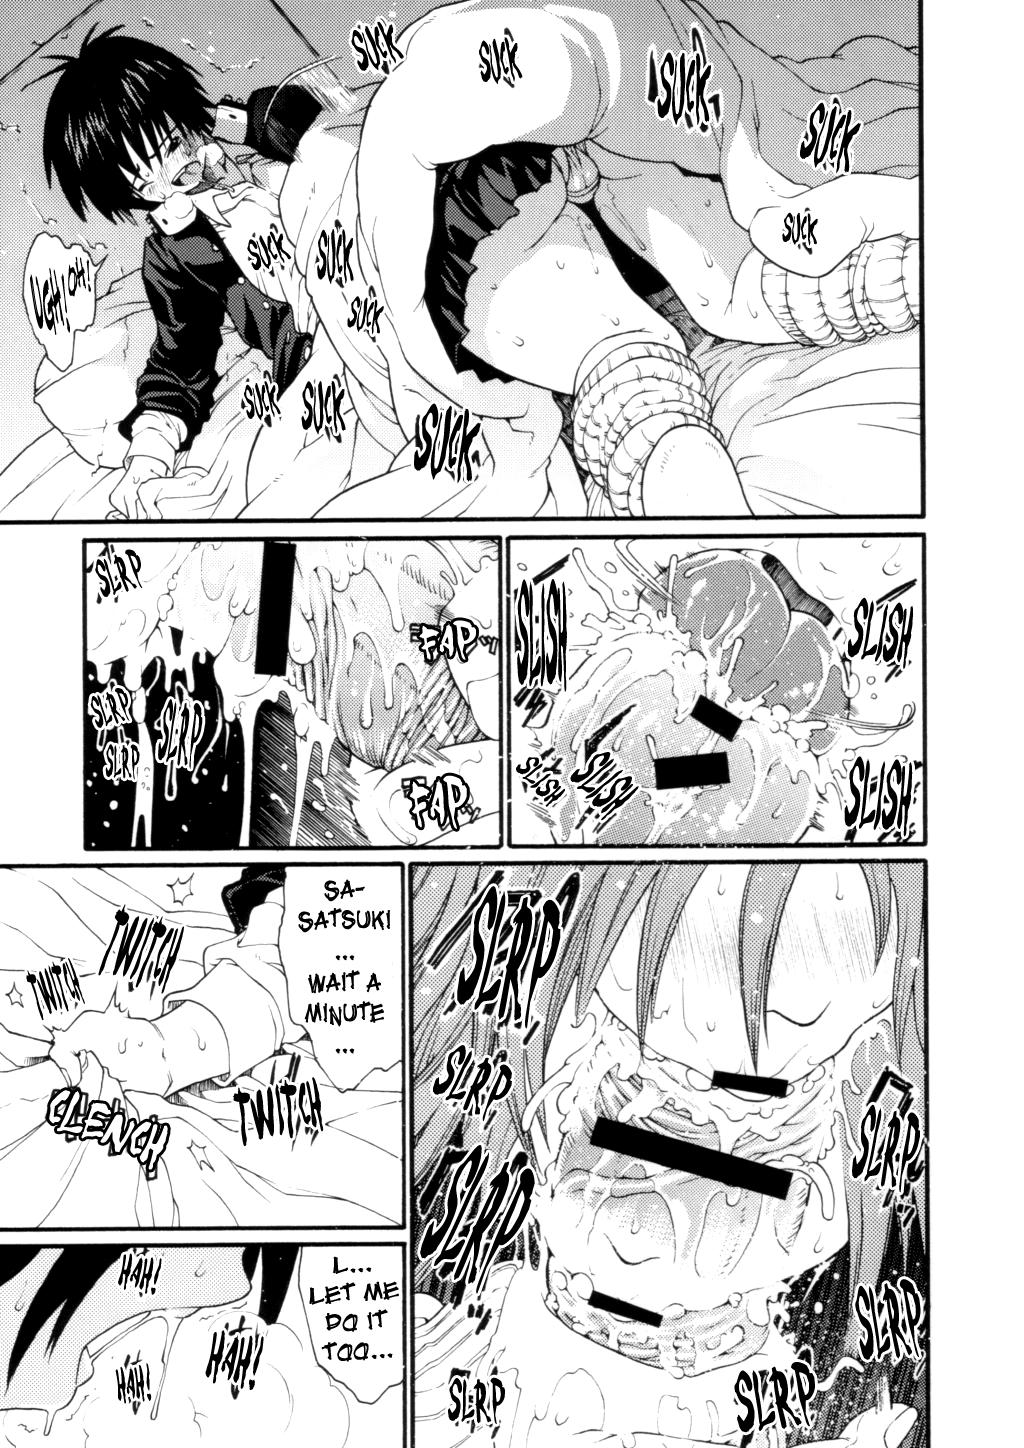 Hot Mom Haru Ichigo Vol. 2 - Spring Strawberry Vol. 2 - Ichigo 100 Amatuer Porn - Page 10